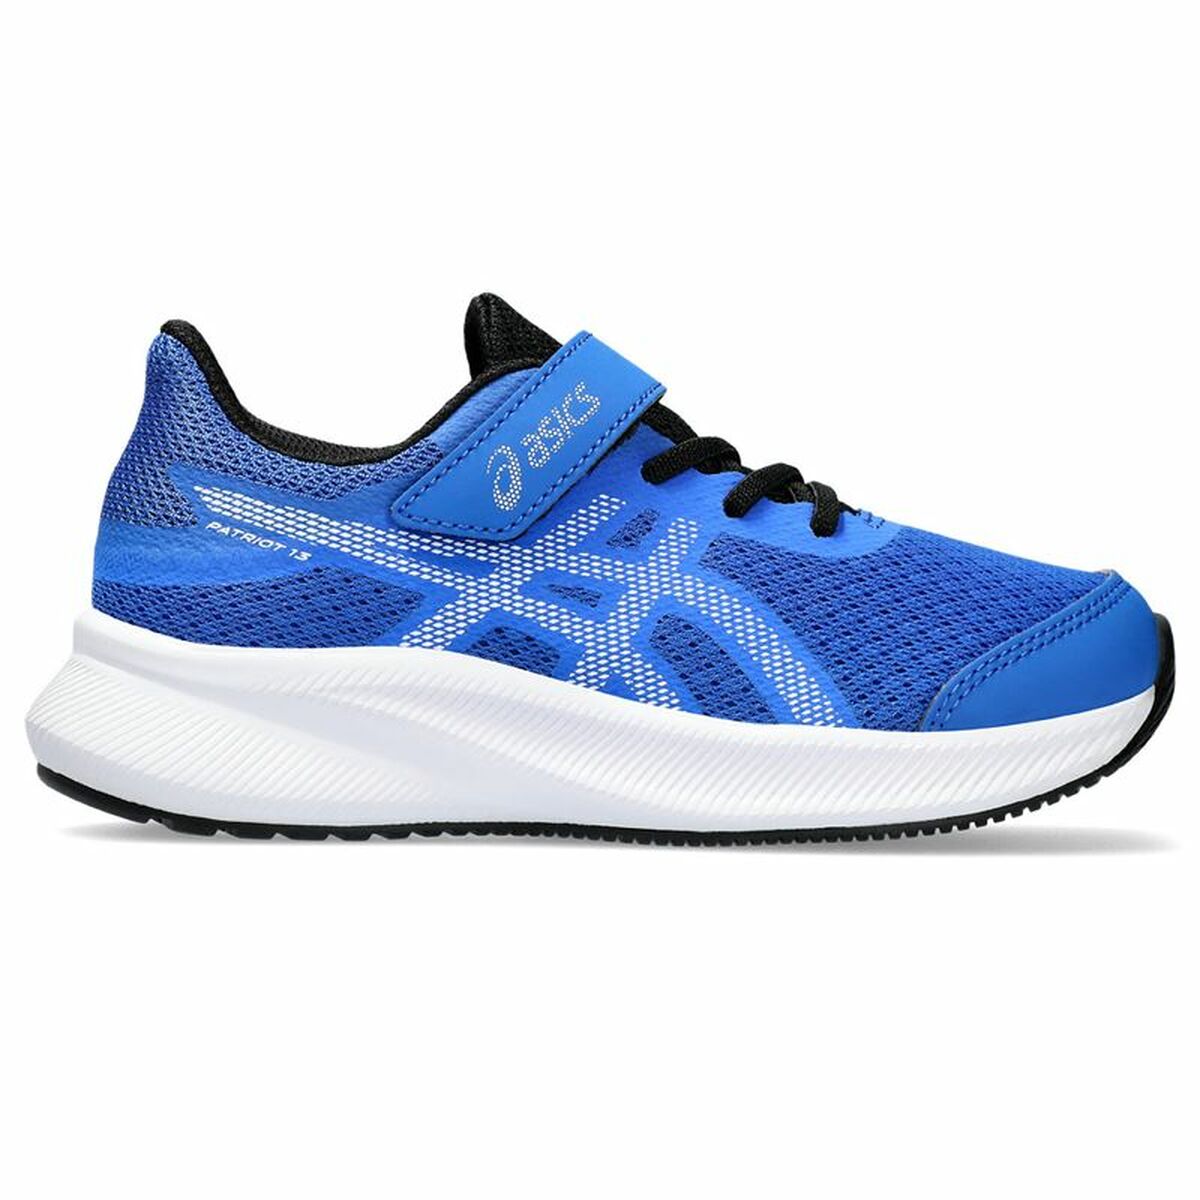 Chaussures de Running pour Enfants Asics Patriot 13 PS Bleu